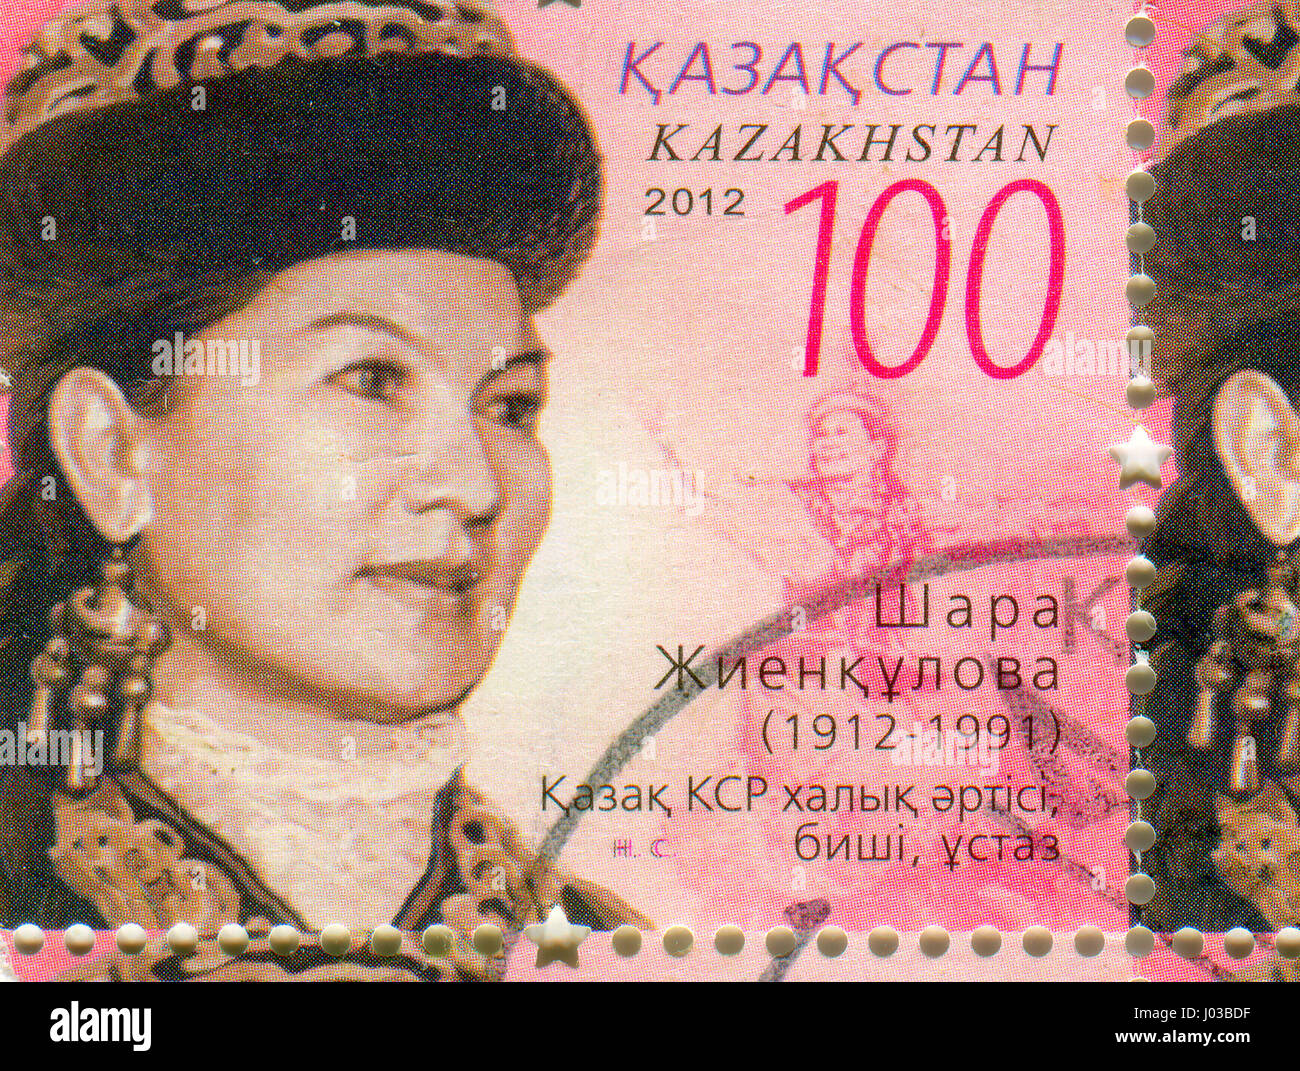 Il GOMEL, Bielorussia, Aprile 8, 2017. Timbro stampato in Kazakistan mostra immagine della Shara Zhienkulova (Luglio 18, 1912 - 21 Maggio 1991) è un Soviet kazako. Foto Stock